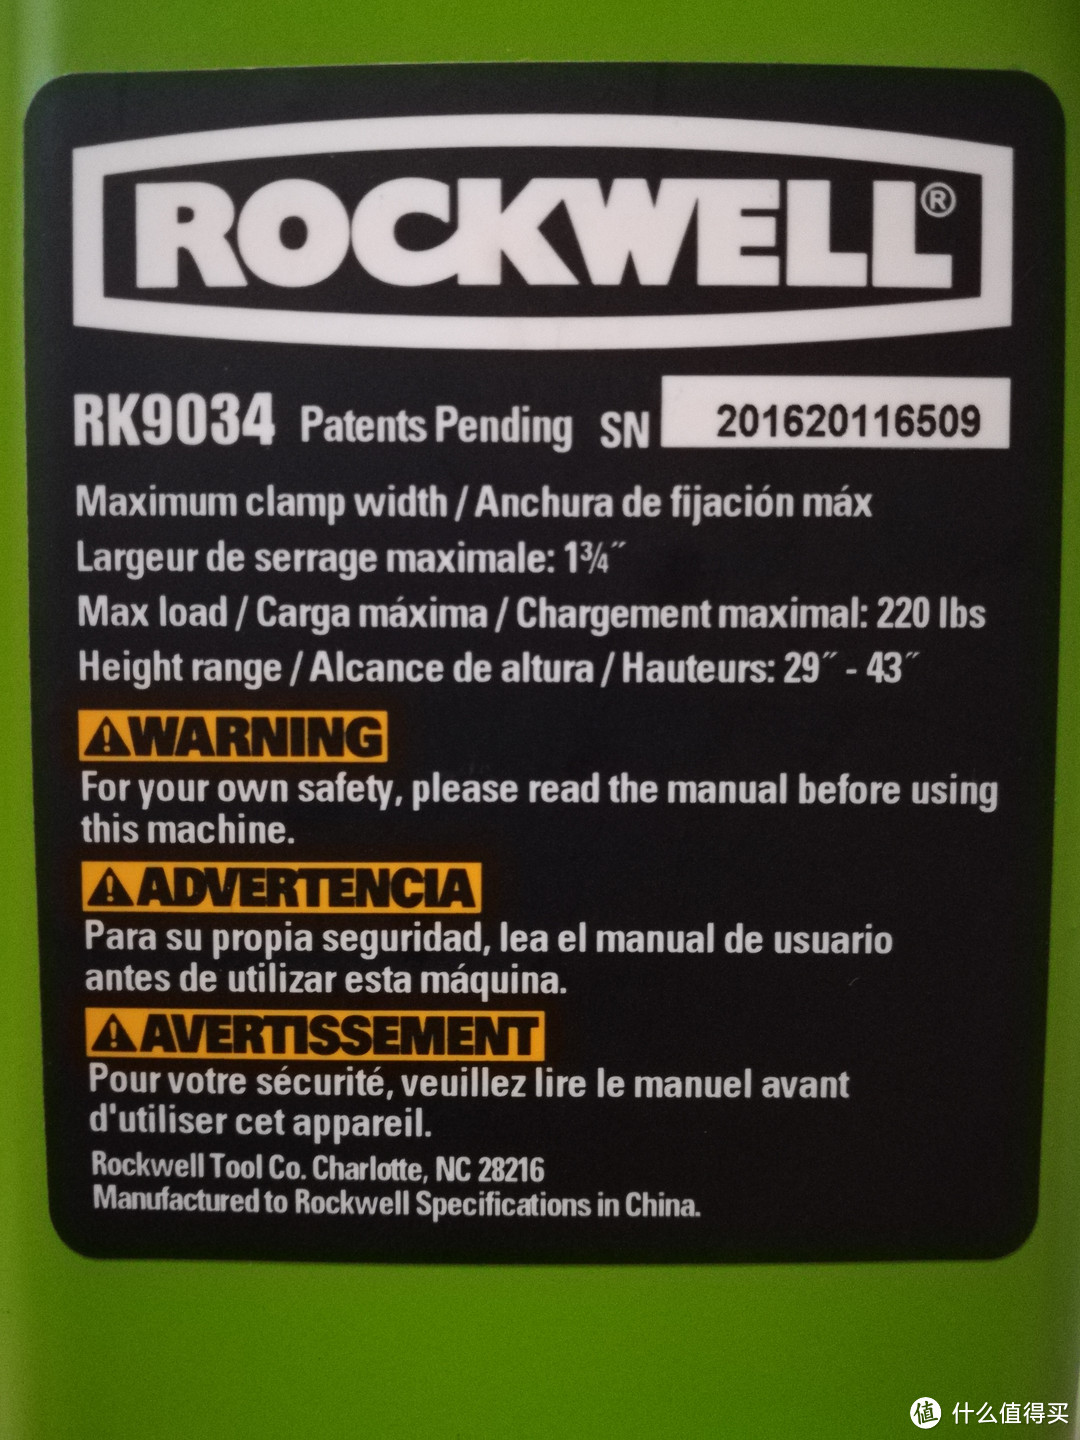 凡事自己来-Rockwell 罗克韦尔 RK9034 多功能夹力持